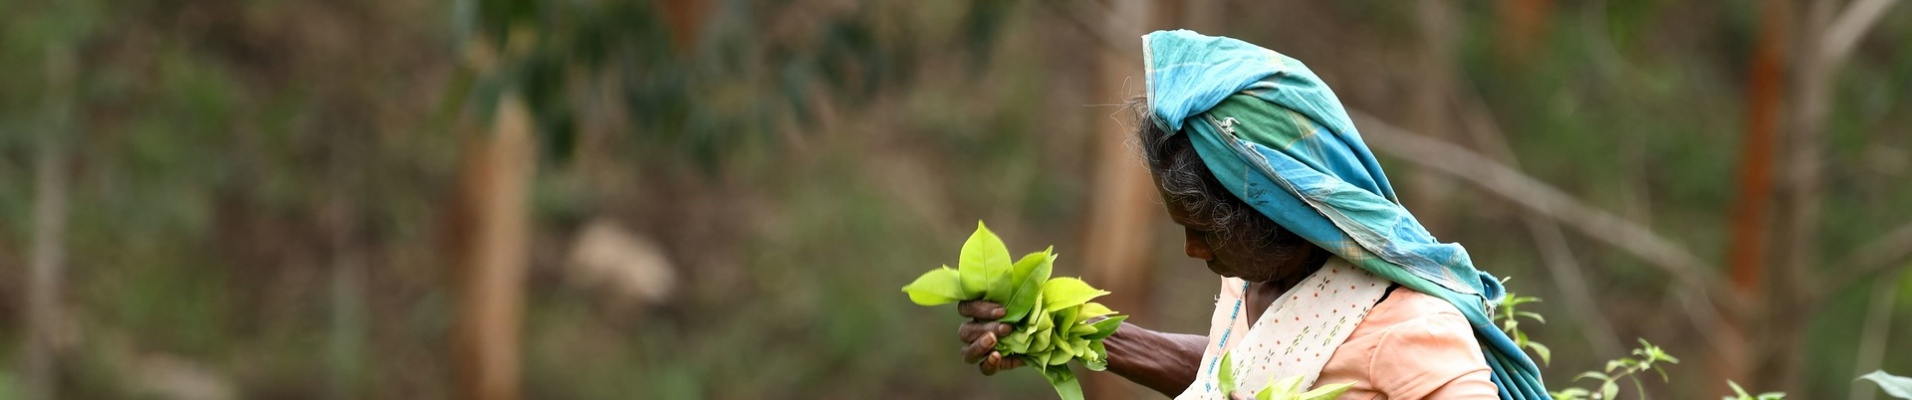 Cueilleuse de thé en action au Sri Lanka